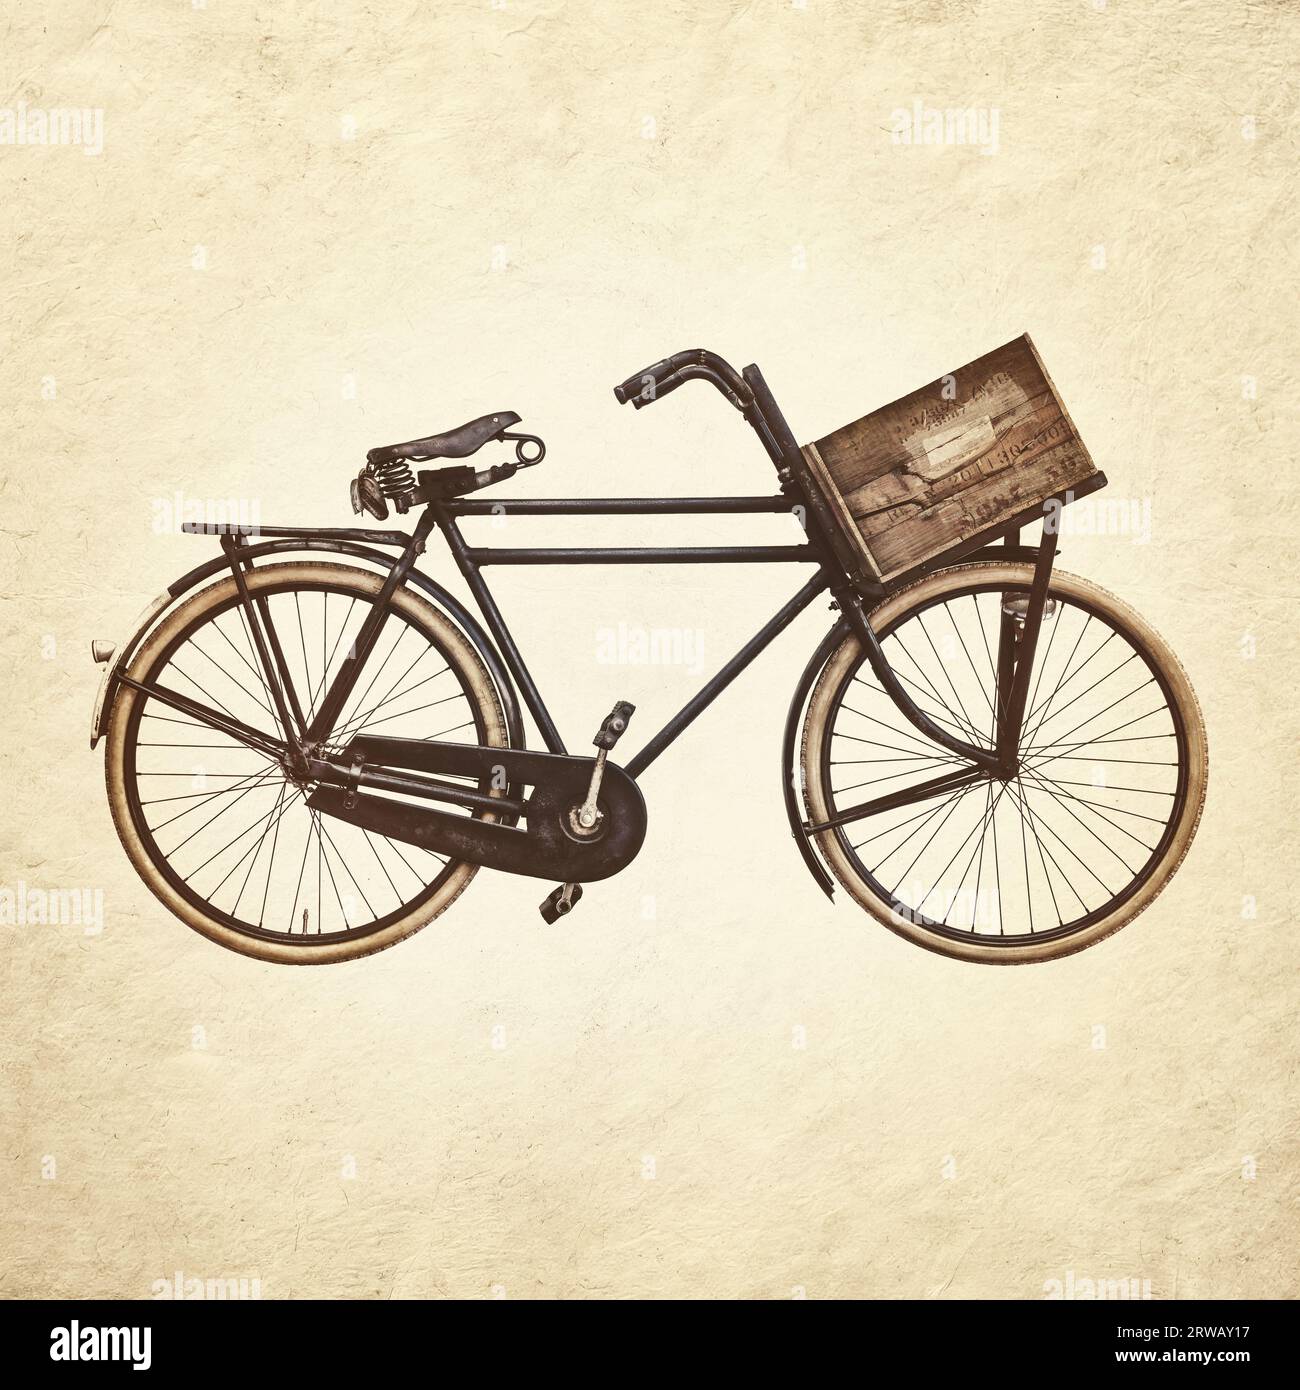 Immagine in tonalità seppia di una bicicletta cargo nera d'epoca con una vecchia cassa di trasporto in legno Foto Stock